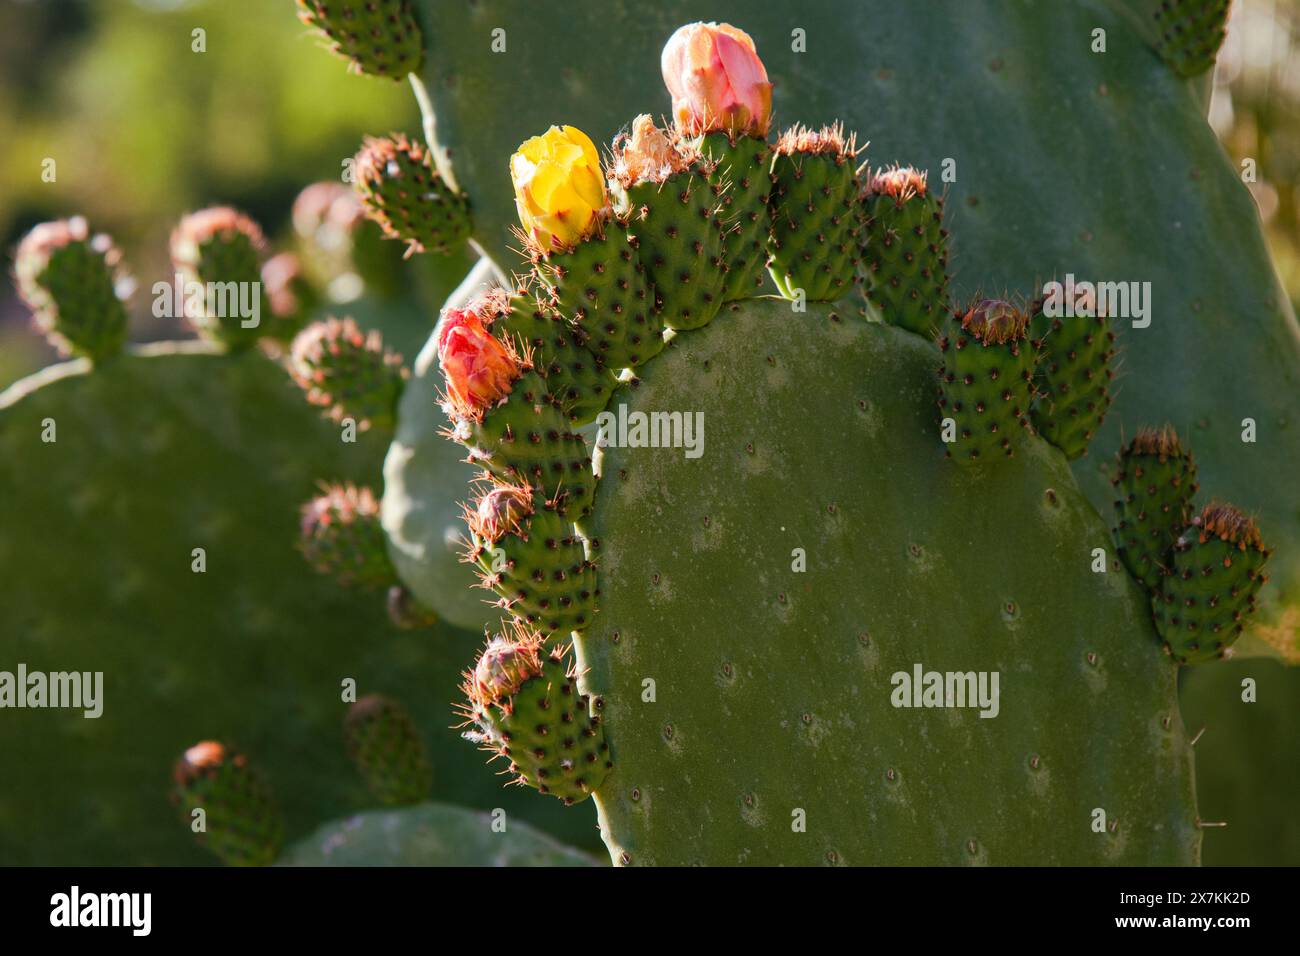 Detalle de una chumbera, opuntia ficus, a finales de primavera con flores y frutos Stock Photo